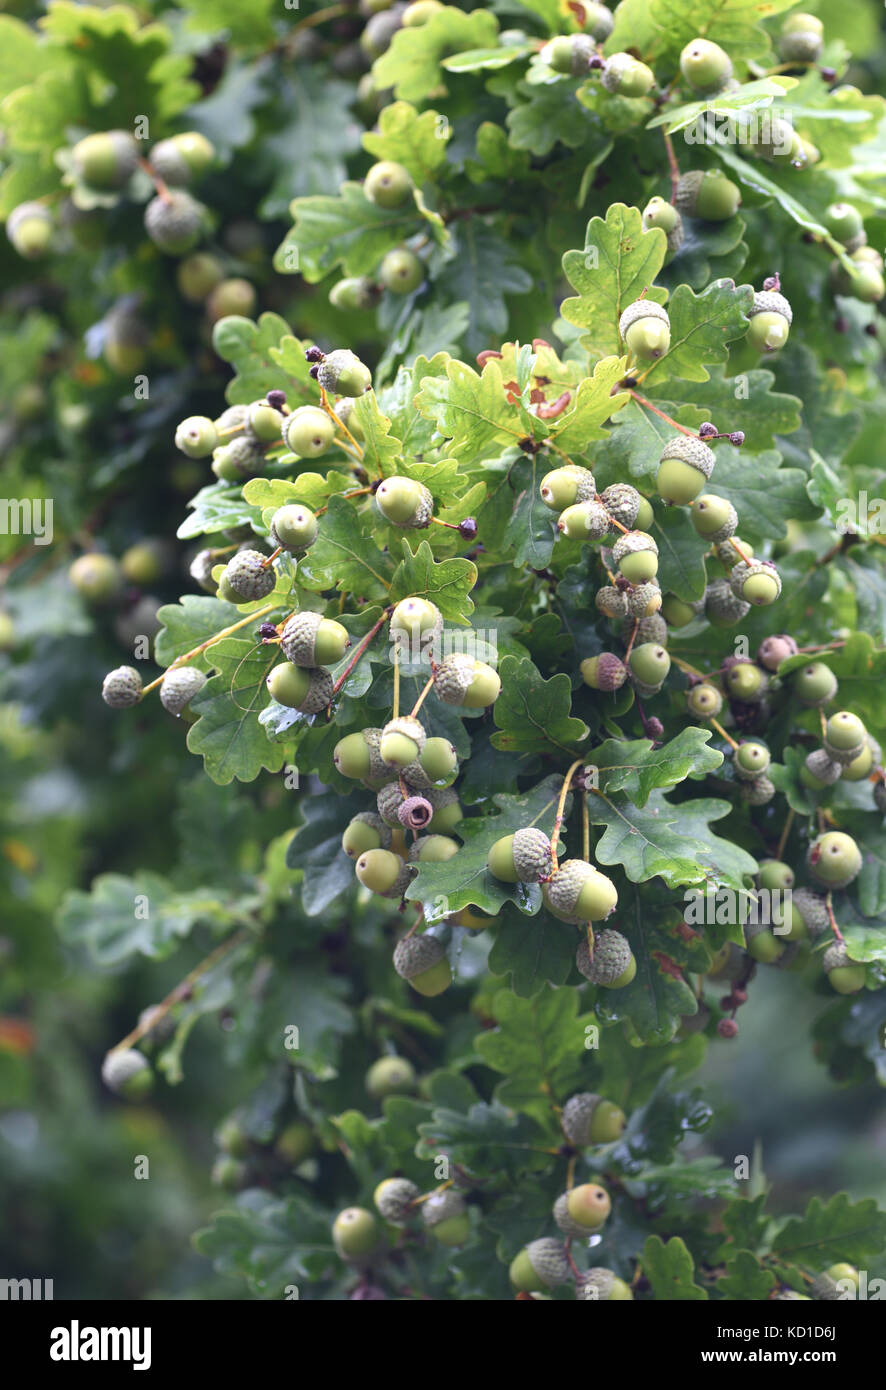 Une grosse récolte de glands, pétiolées longues le fruit d'un arbre de chêne pédonculé (Quercus robur). Woodchurch, Kent, UK. Banque D'Images